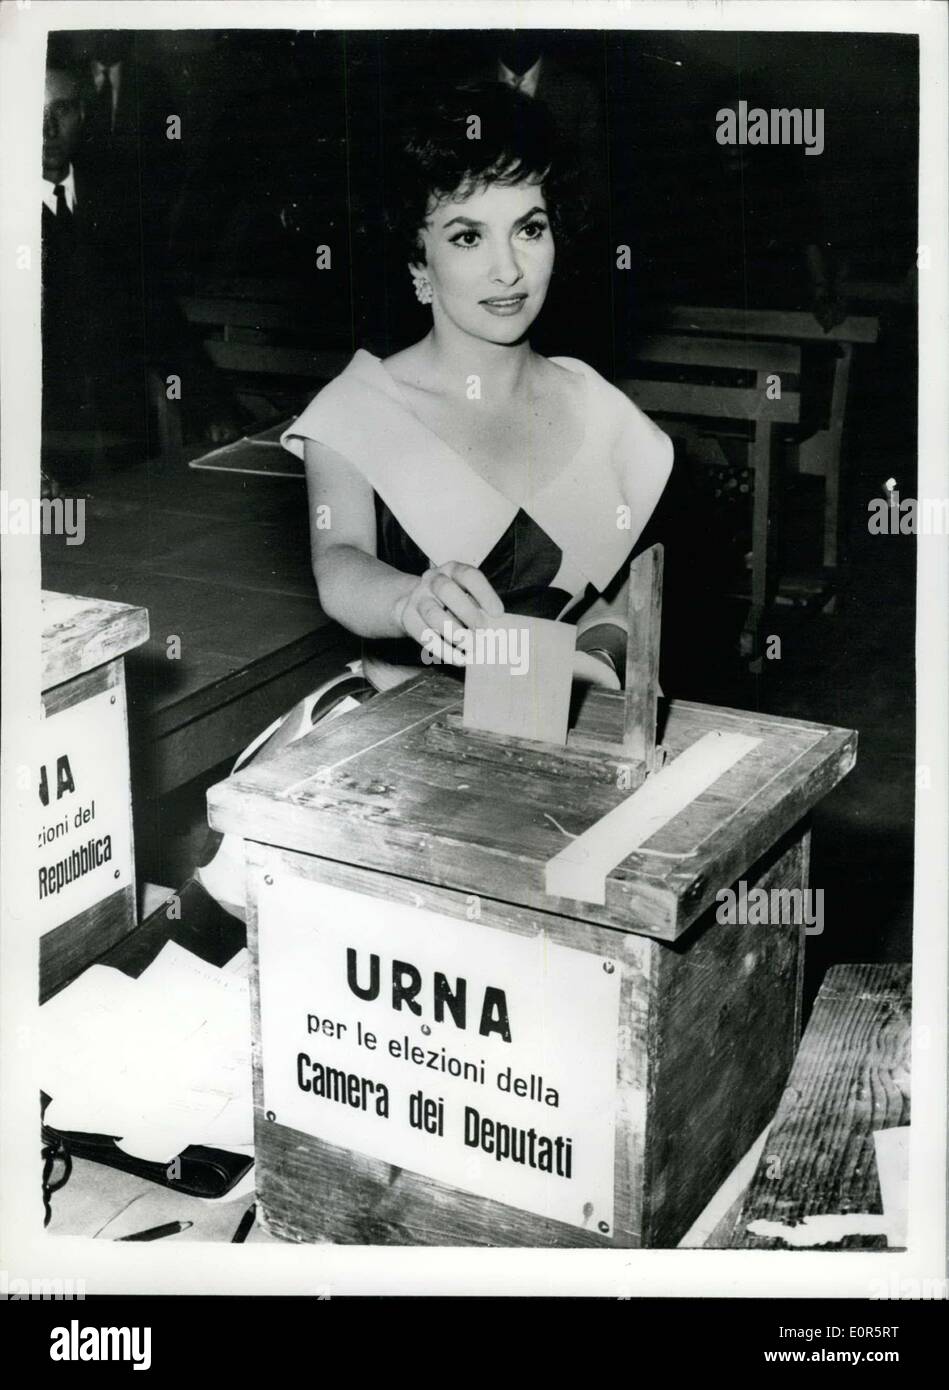 27 maggio 1958 - Italia va al sondaggio. Gina Lollobrigidia getta il suo voto. La foto mostra il popolare italiana star dello schermo Gina Lollobrigidia - getta la sua vots a Roma stand - durante il recente italiano elezioni generali. Foto Stock